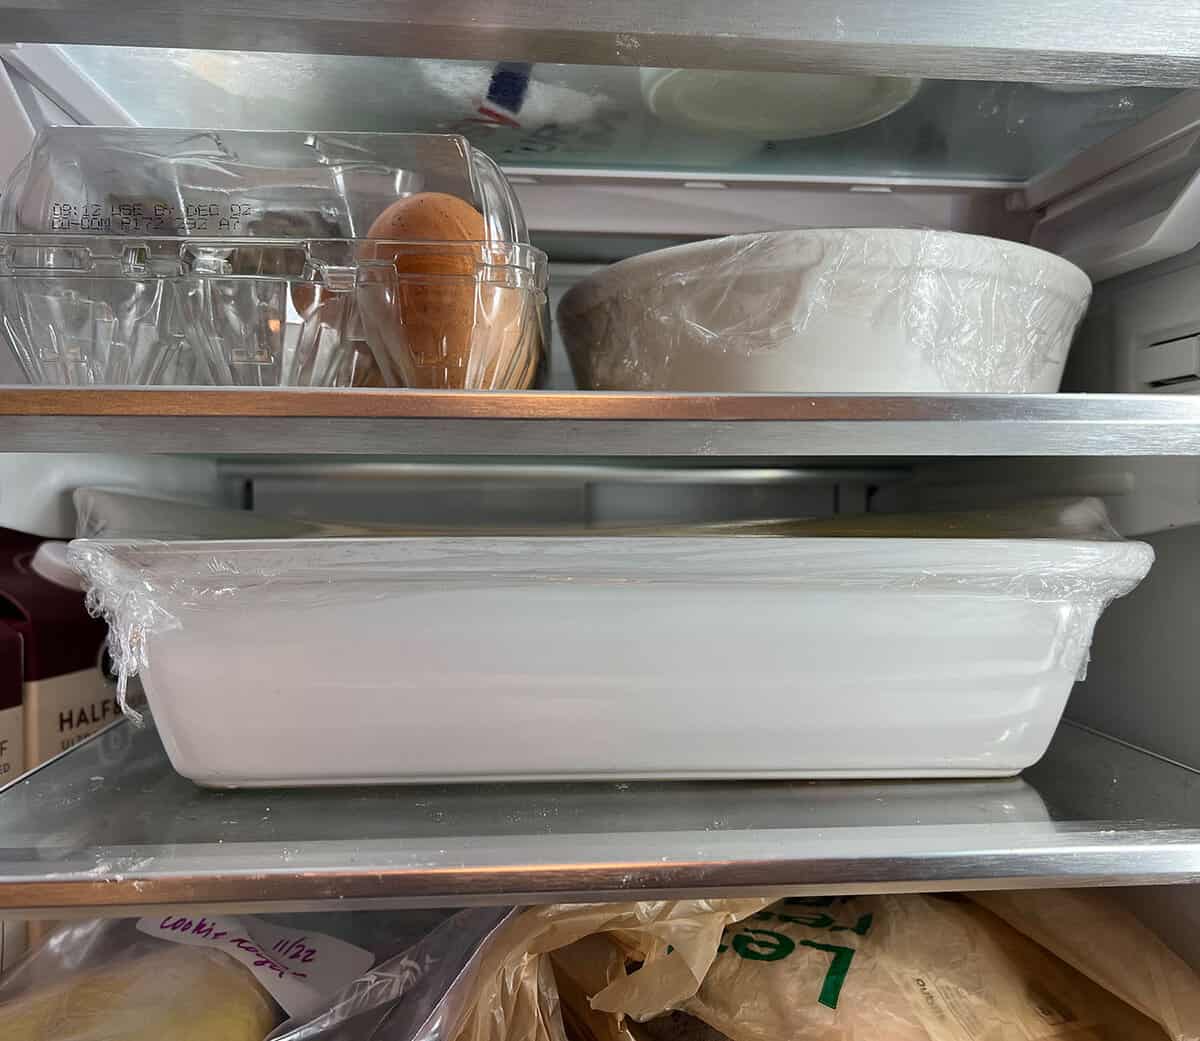 Le Creuset casserole dish in the fridge